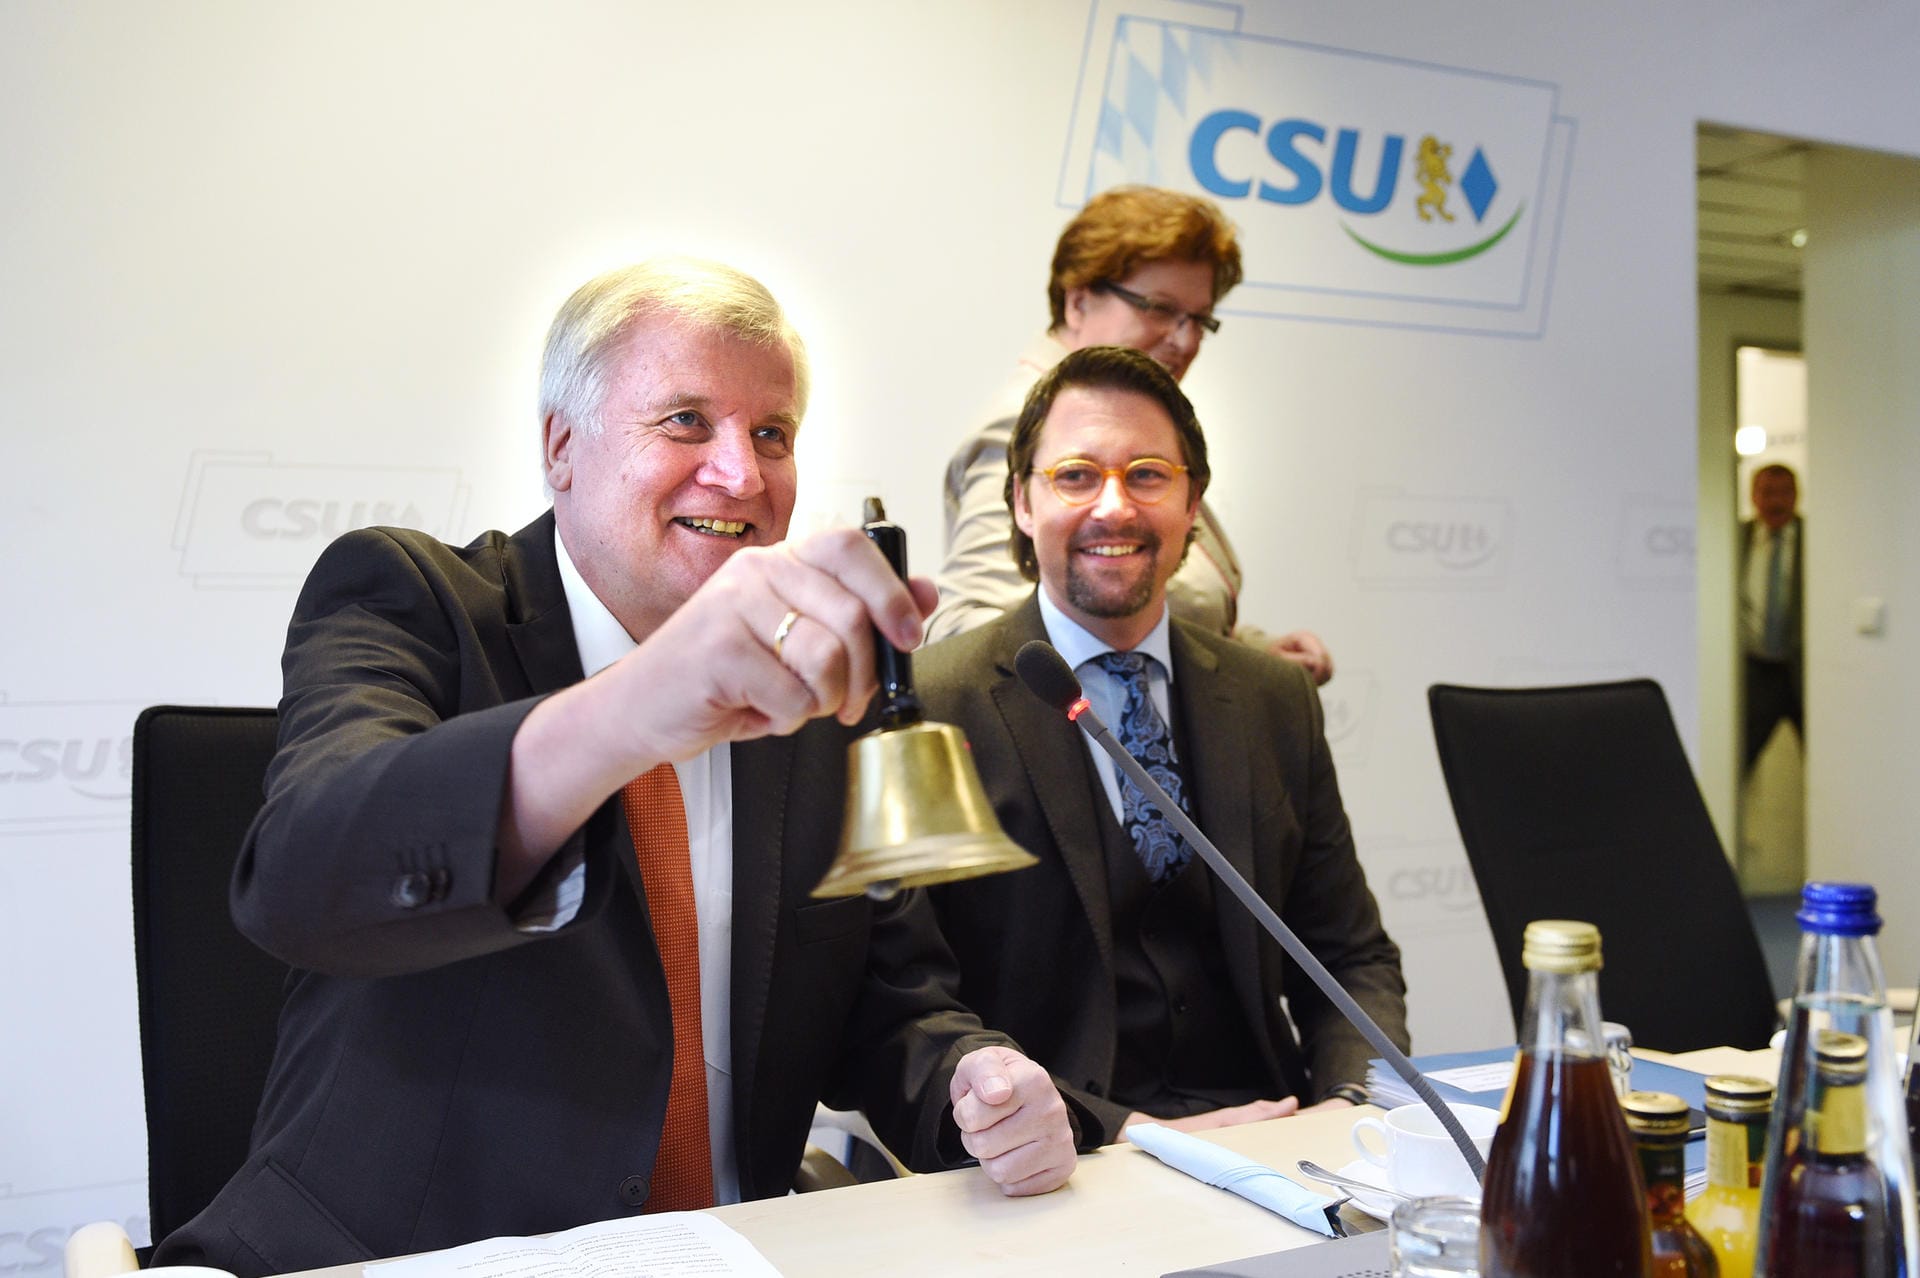 Bald schon ist Scheuer auch in der Partei oben angekommen. 2013 wird er Generalsekretär – und darf neben dem damaligen Parteichef Horst Seehofer sitzen, wenn er zur Vorstandssitzung läutet.